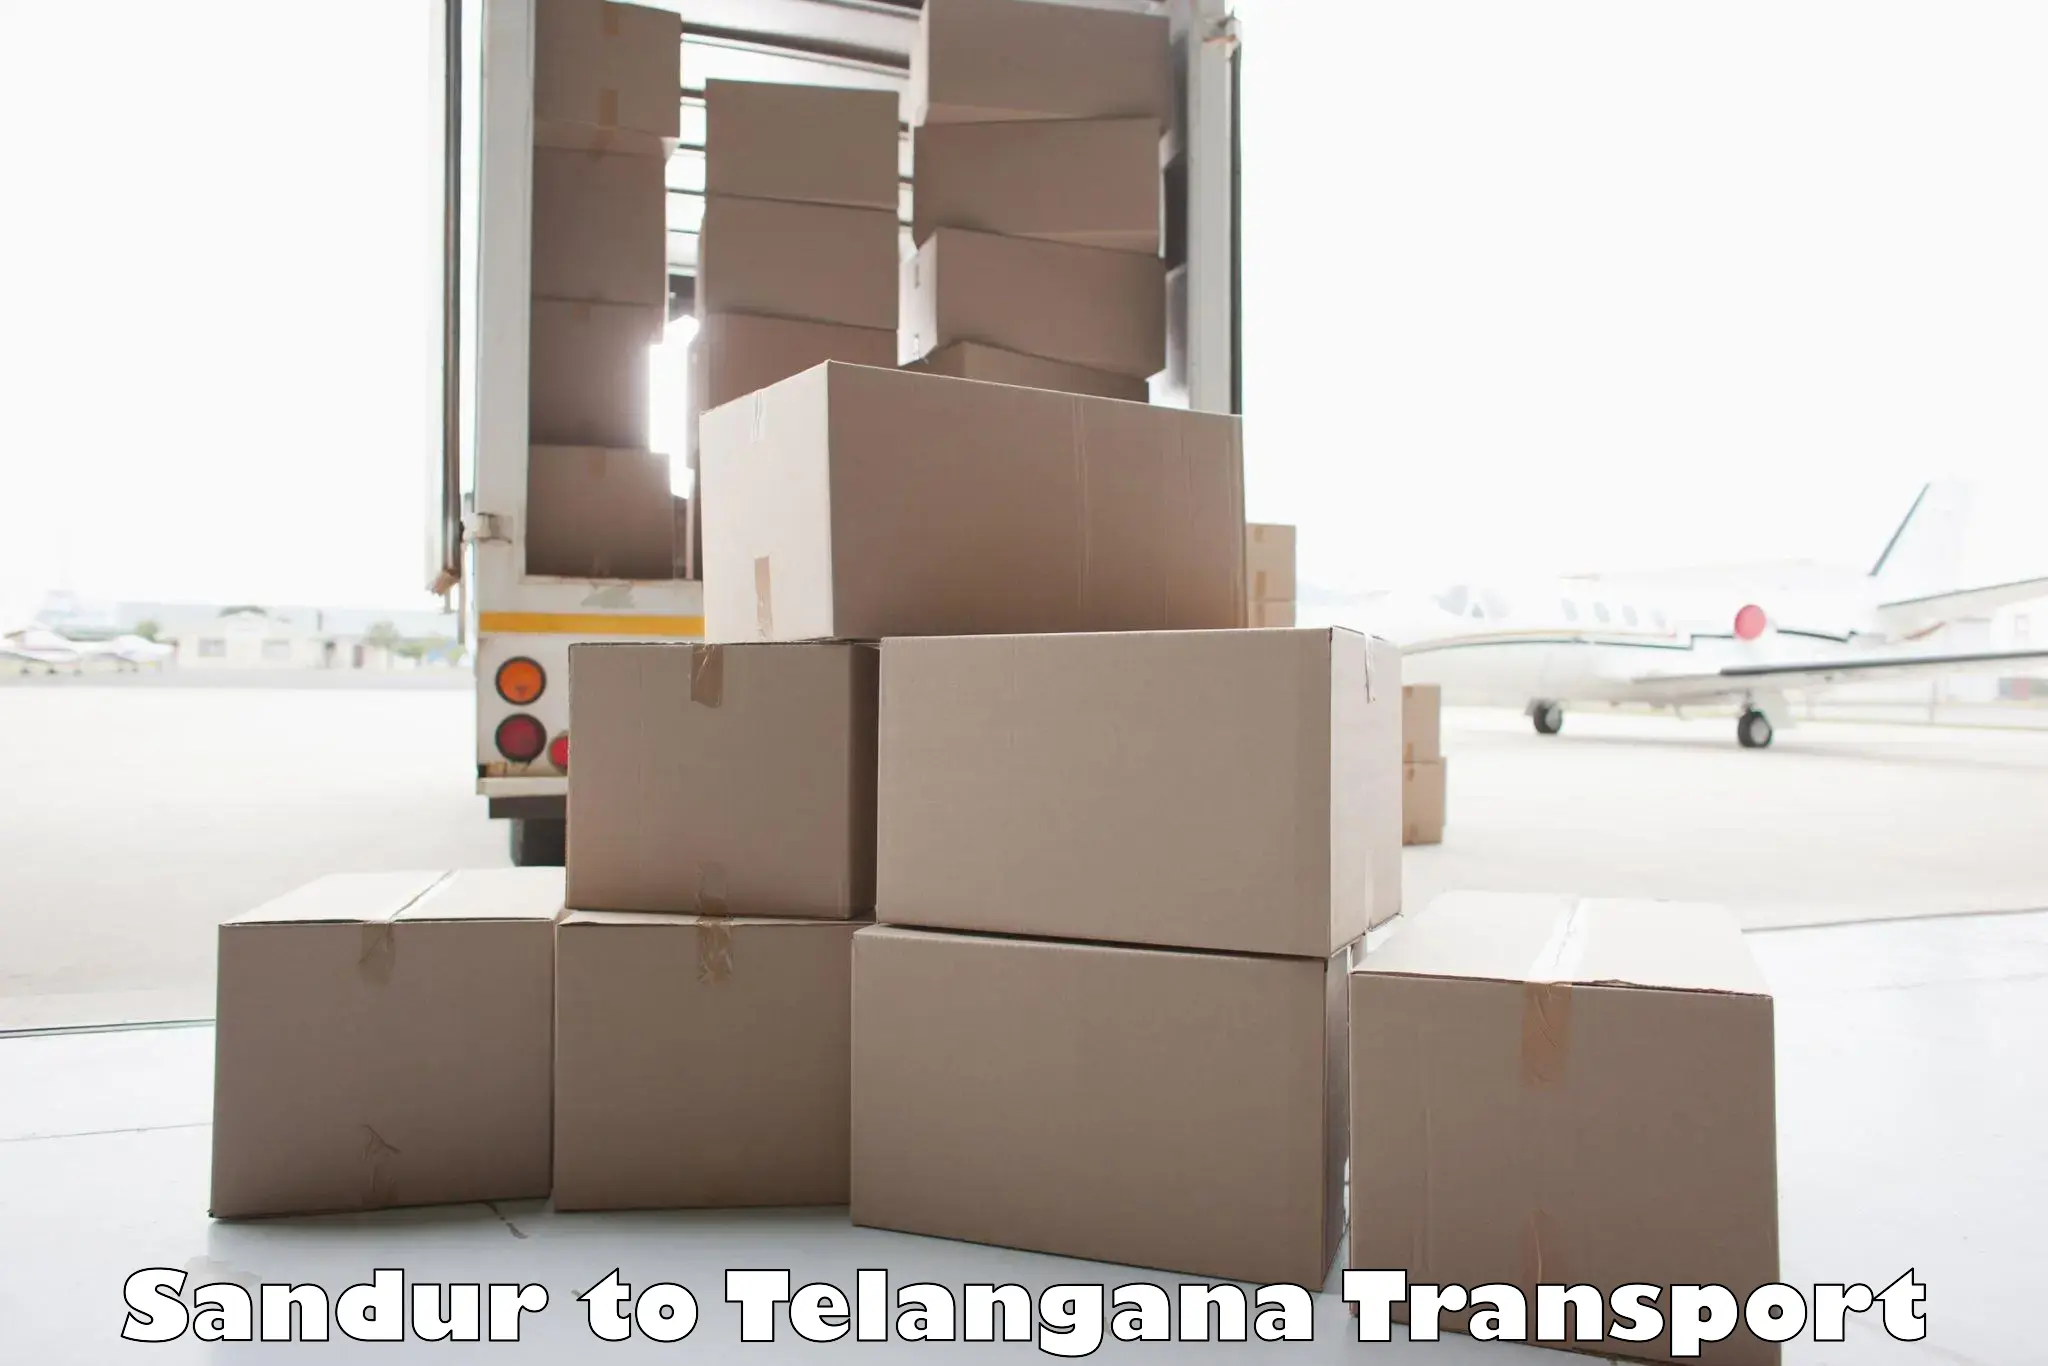 Land transport services Sandur to Hayathnagar